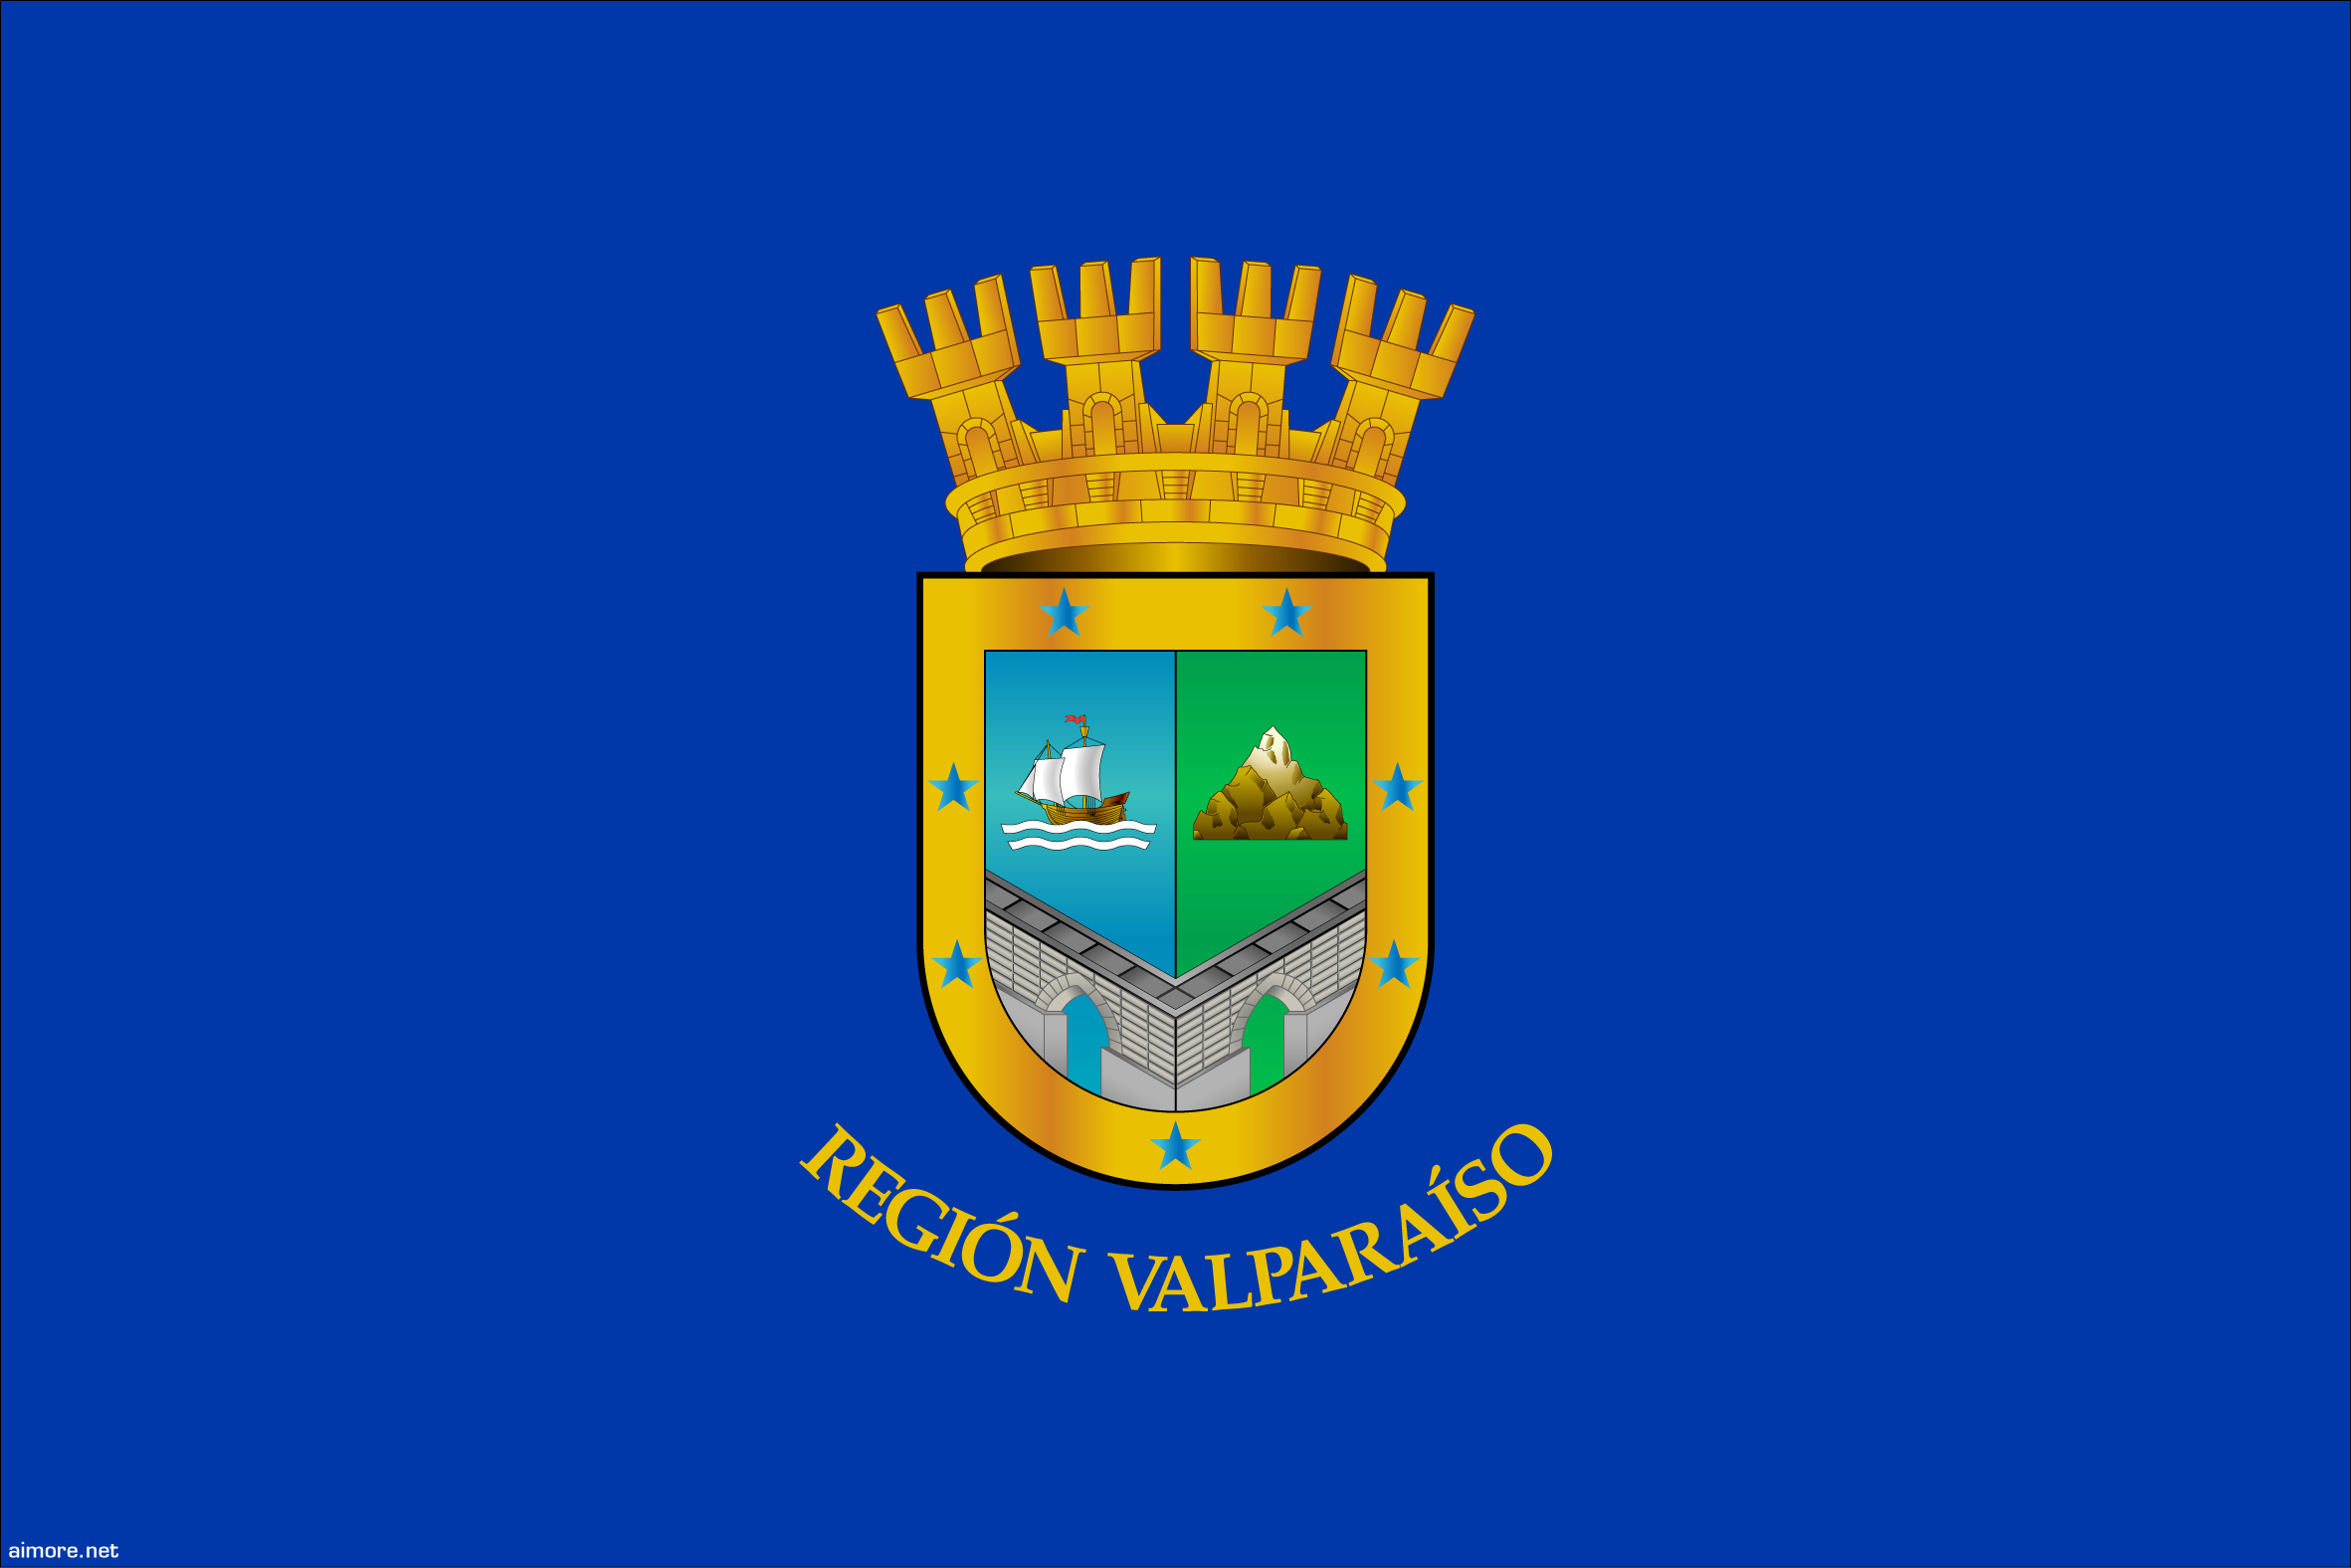 Juan Fernandez Islands, Region of Valparaiso, Chile